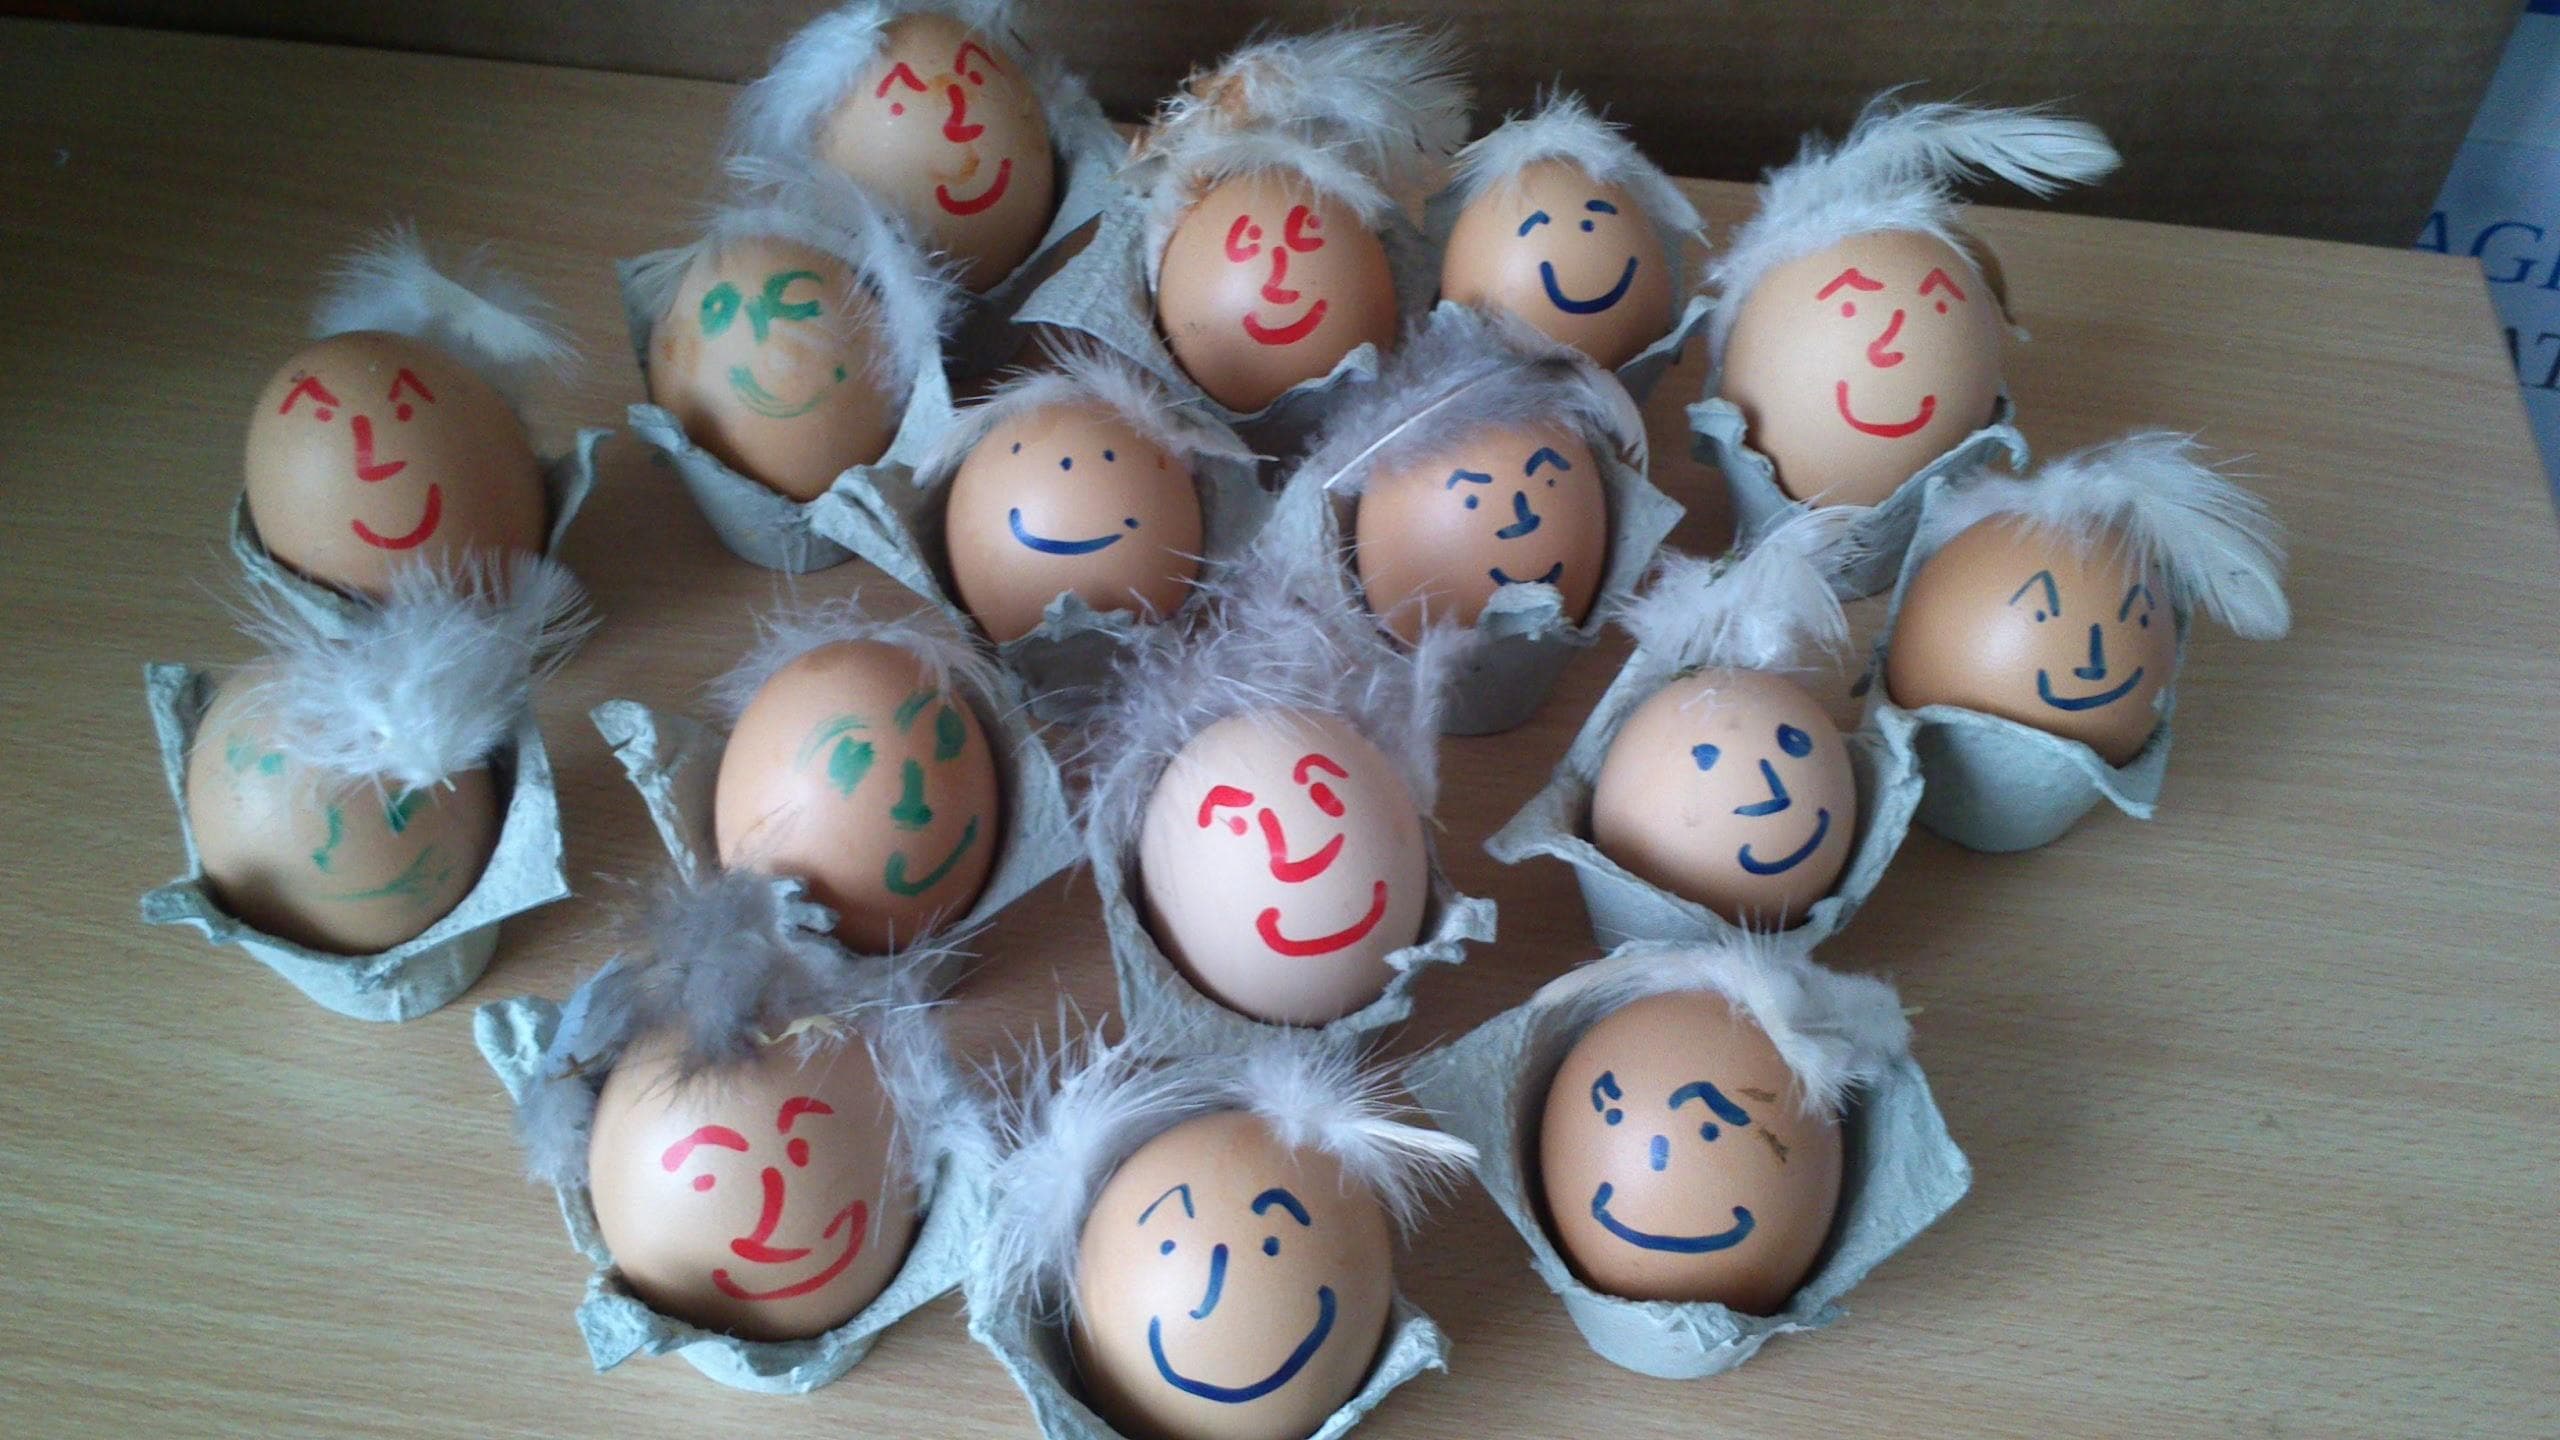 Linda's decorated eggs